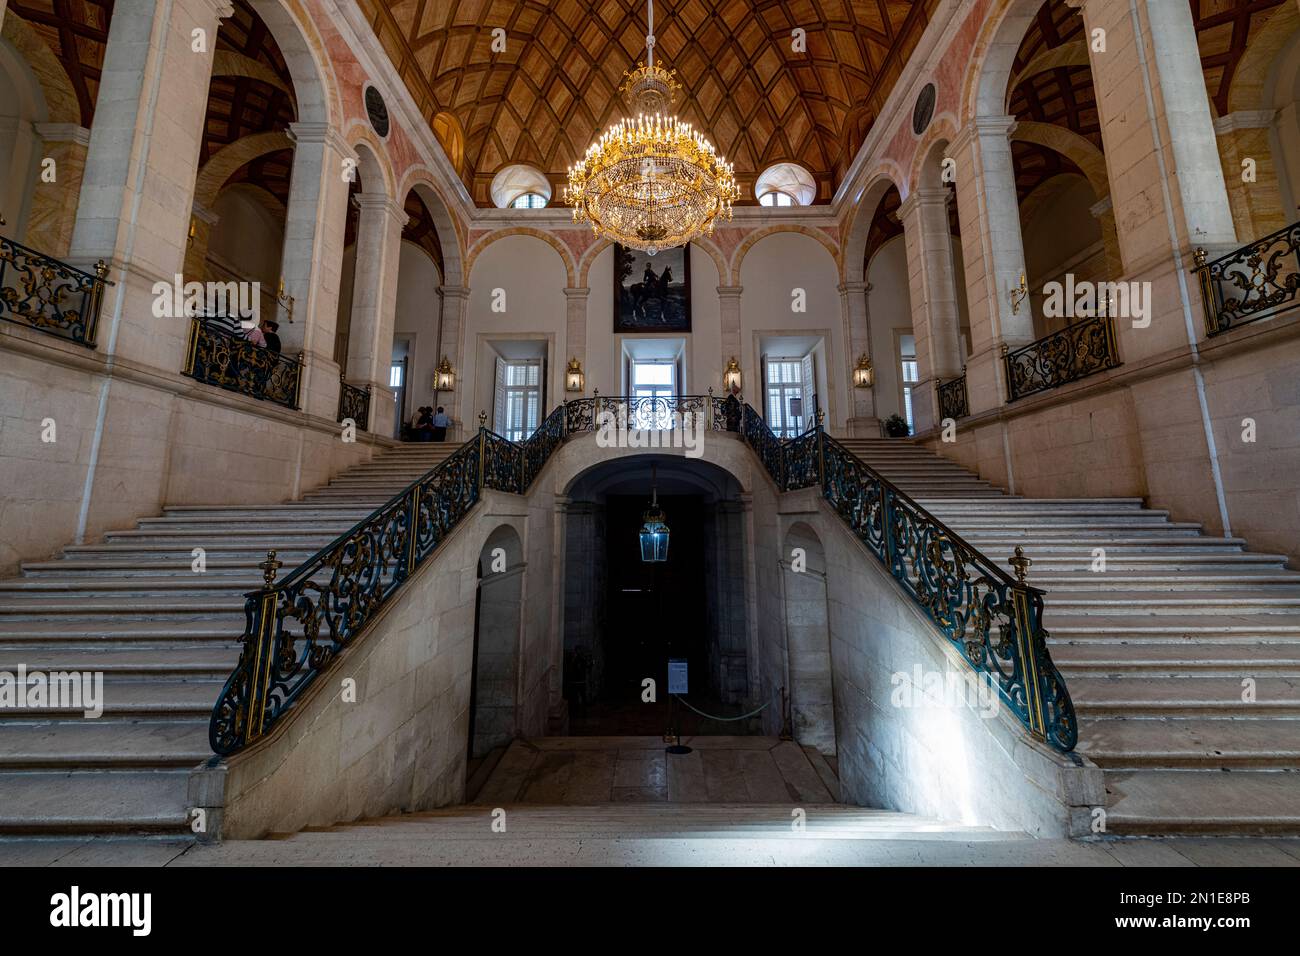 Portail d'entrée du Palais Royal d'Aranjuez, site classé au patrimoine mondial de l'UNESCO, province de Madrid, Espagne, Europe Banque D'Images